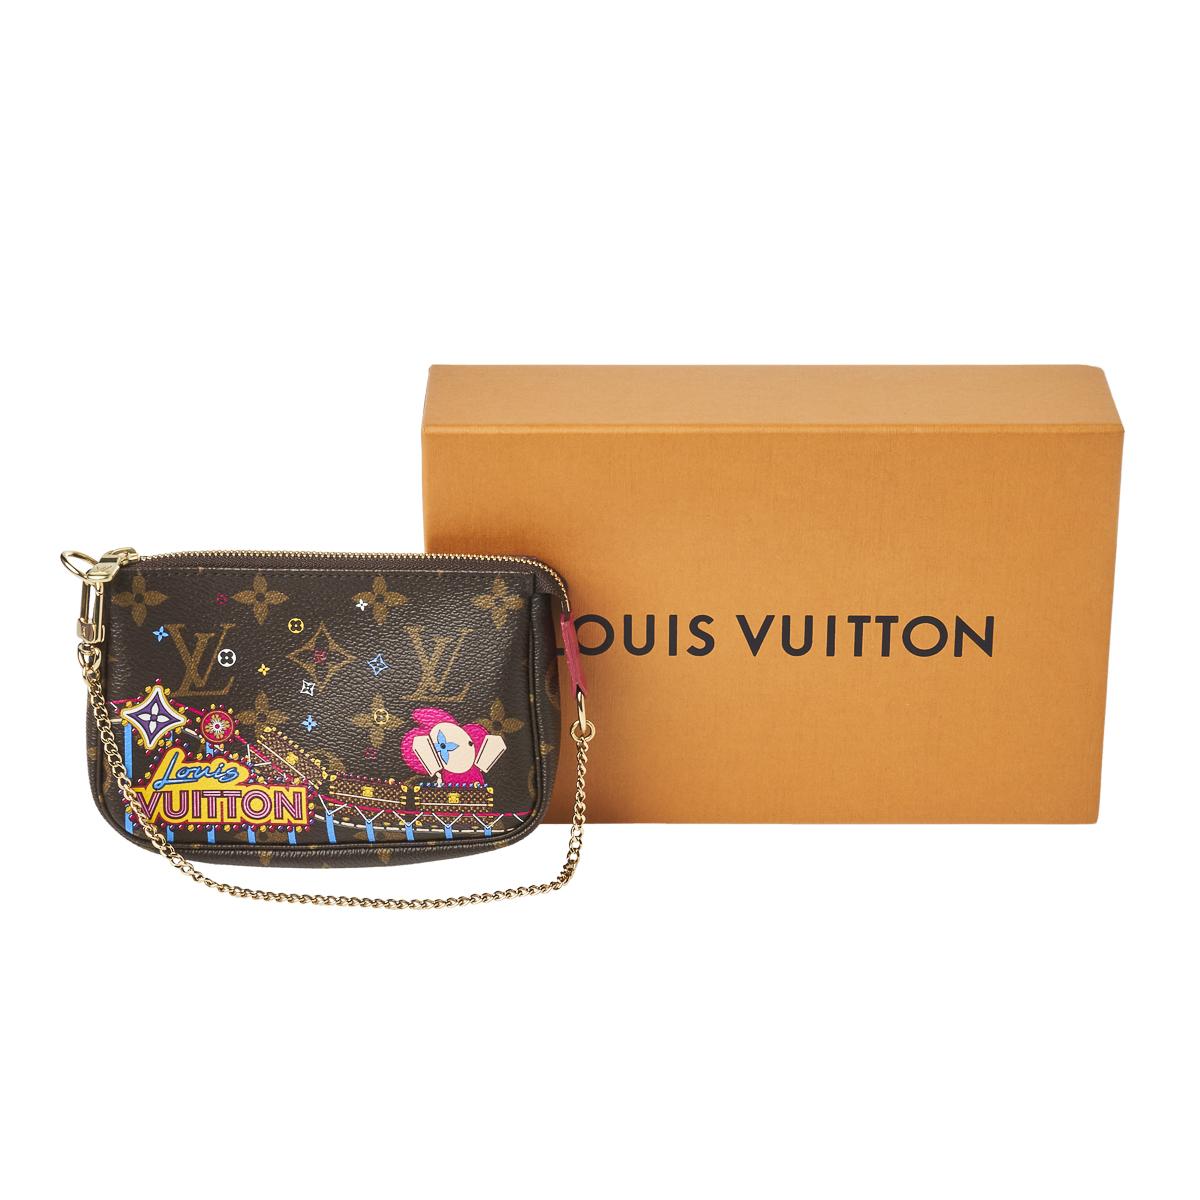 Sold at Auction: Louis Vuitton, LOUIS VUITTON LTD. ED. ACCESSORY POUCH